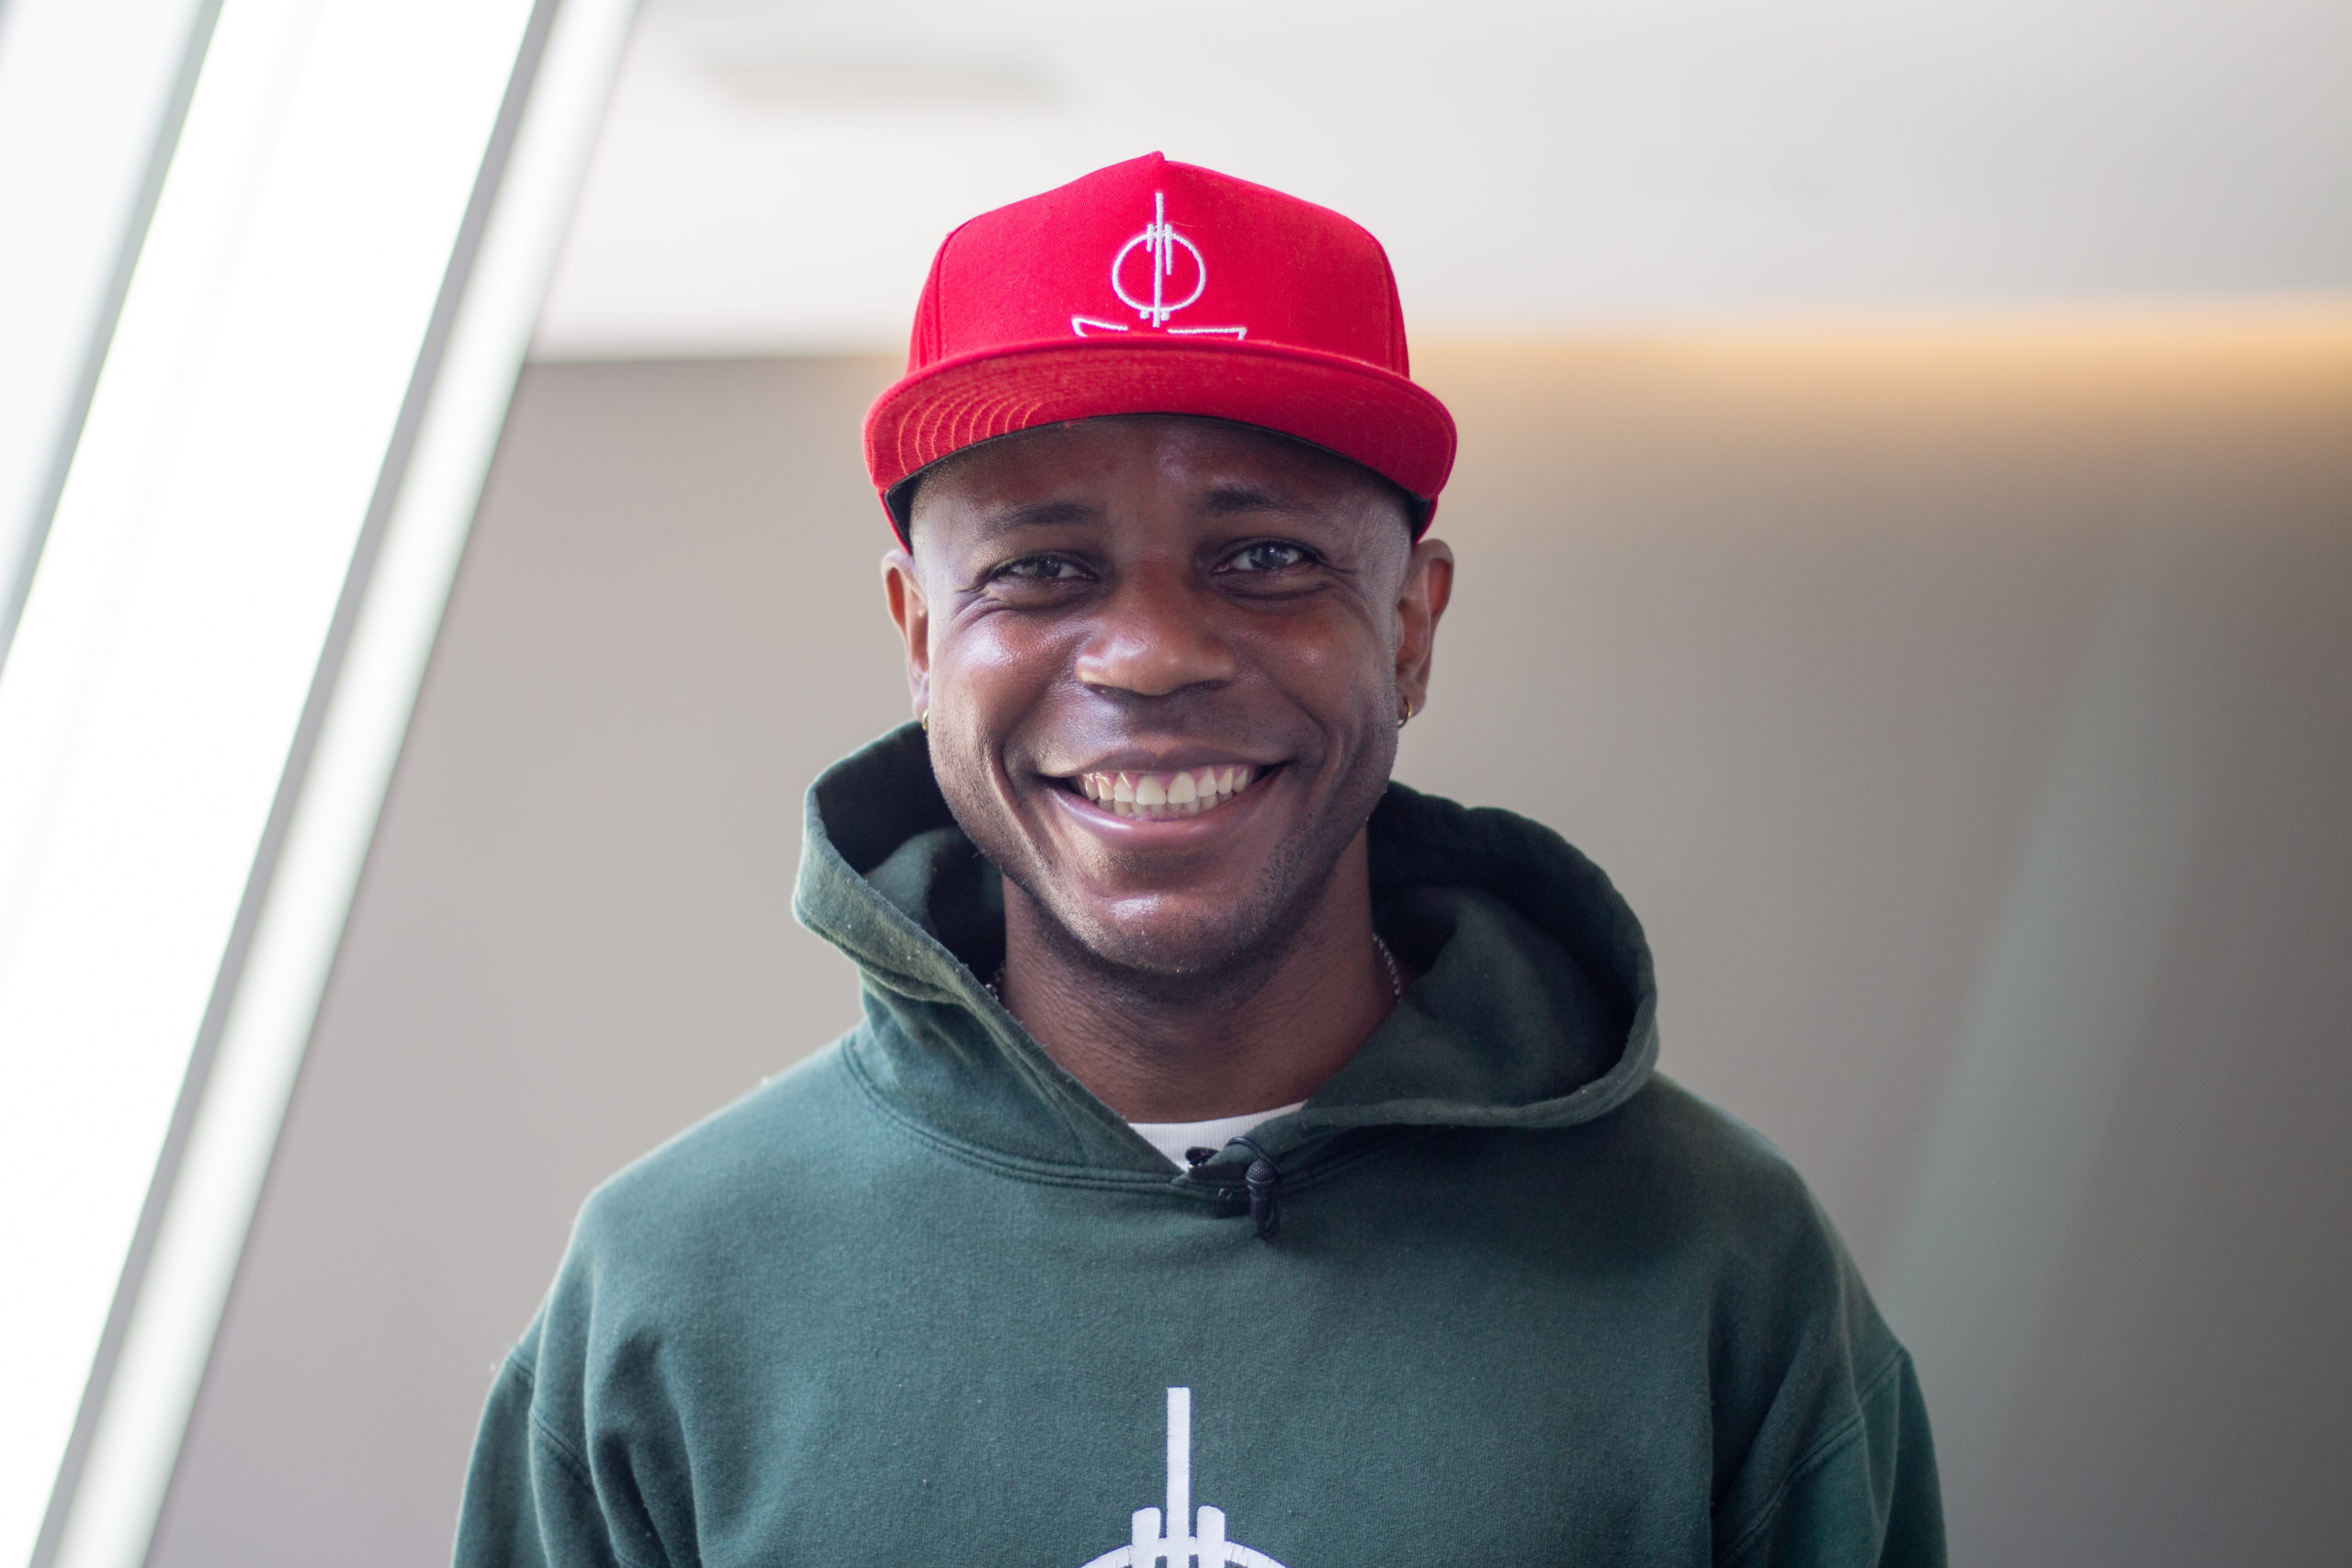 A Black man wearing a red baseball cap and dark green hoodie smiles at the camera. / Un homme Noir en casquette rouge et pull vert foncé sourit à la caméra.